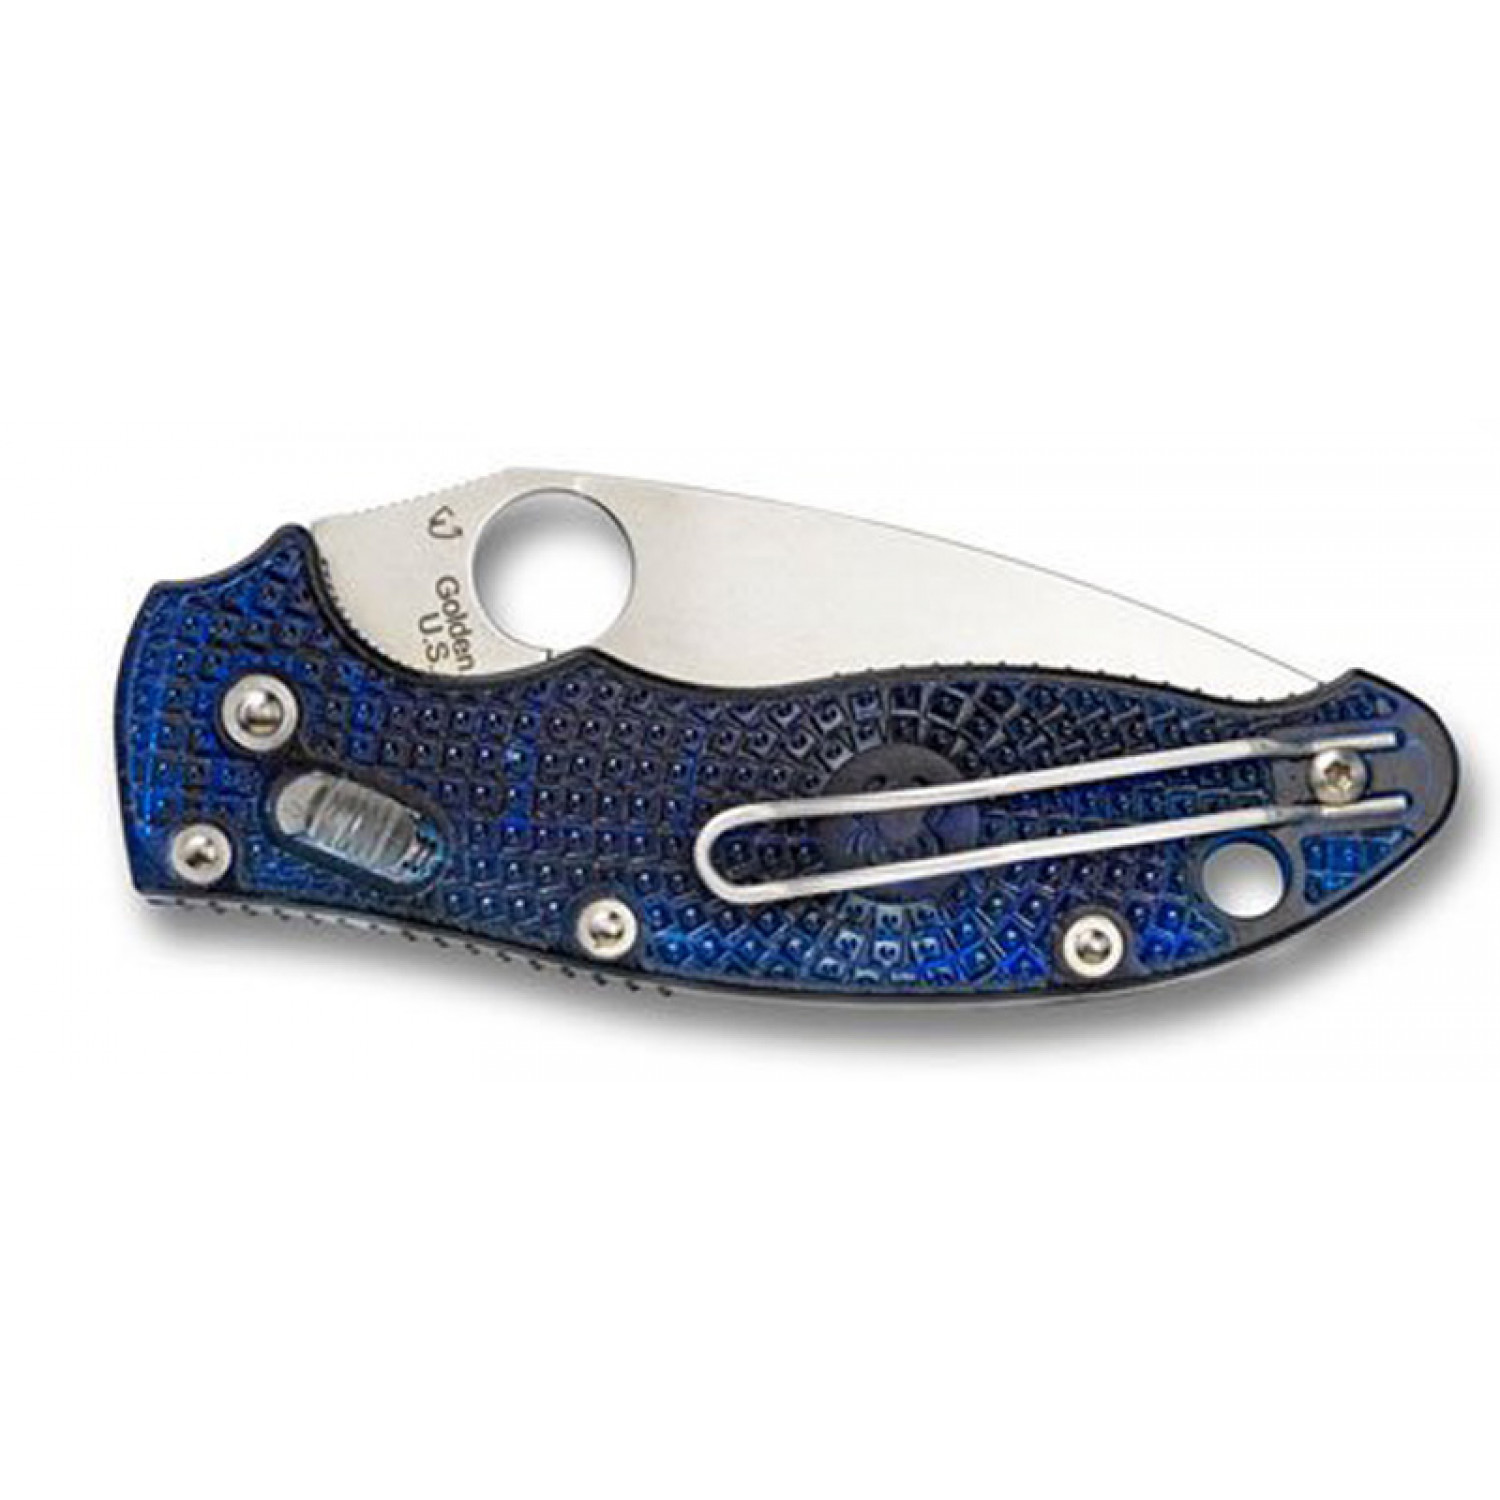 Нож складной Manix 2 Lightweight Blue Spyderco 101PBL2, сталь Carpenter CTS-BD1 Alloy Satin Plain, рукоять пластик FRCP, синий от Ножиков